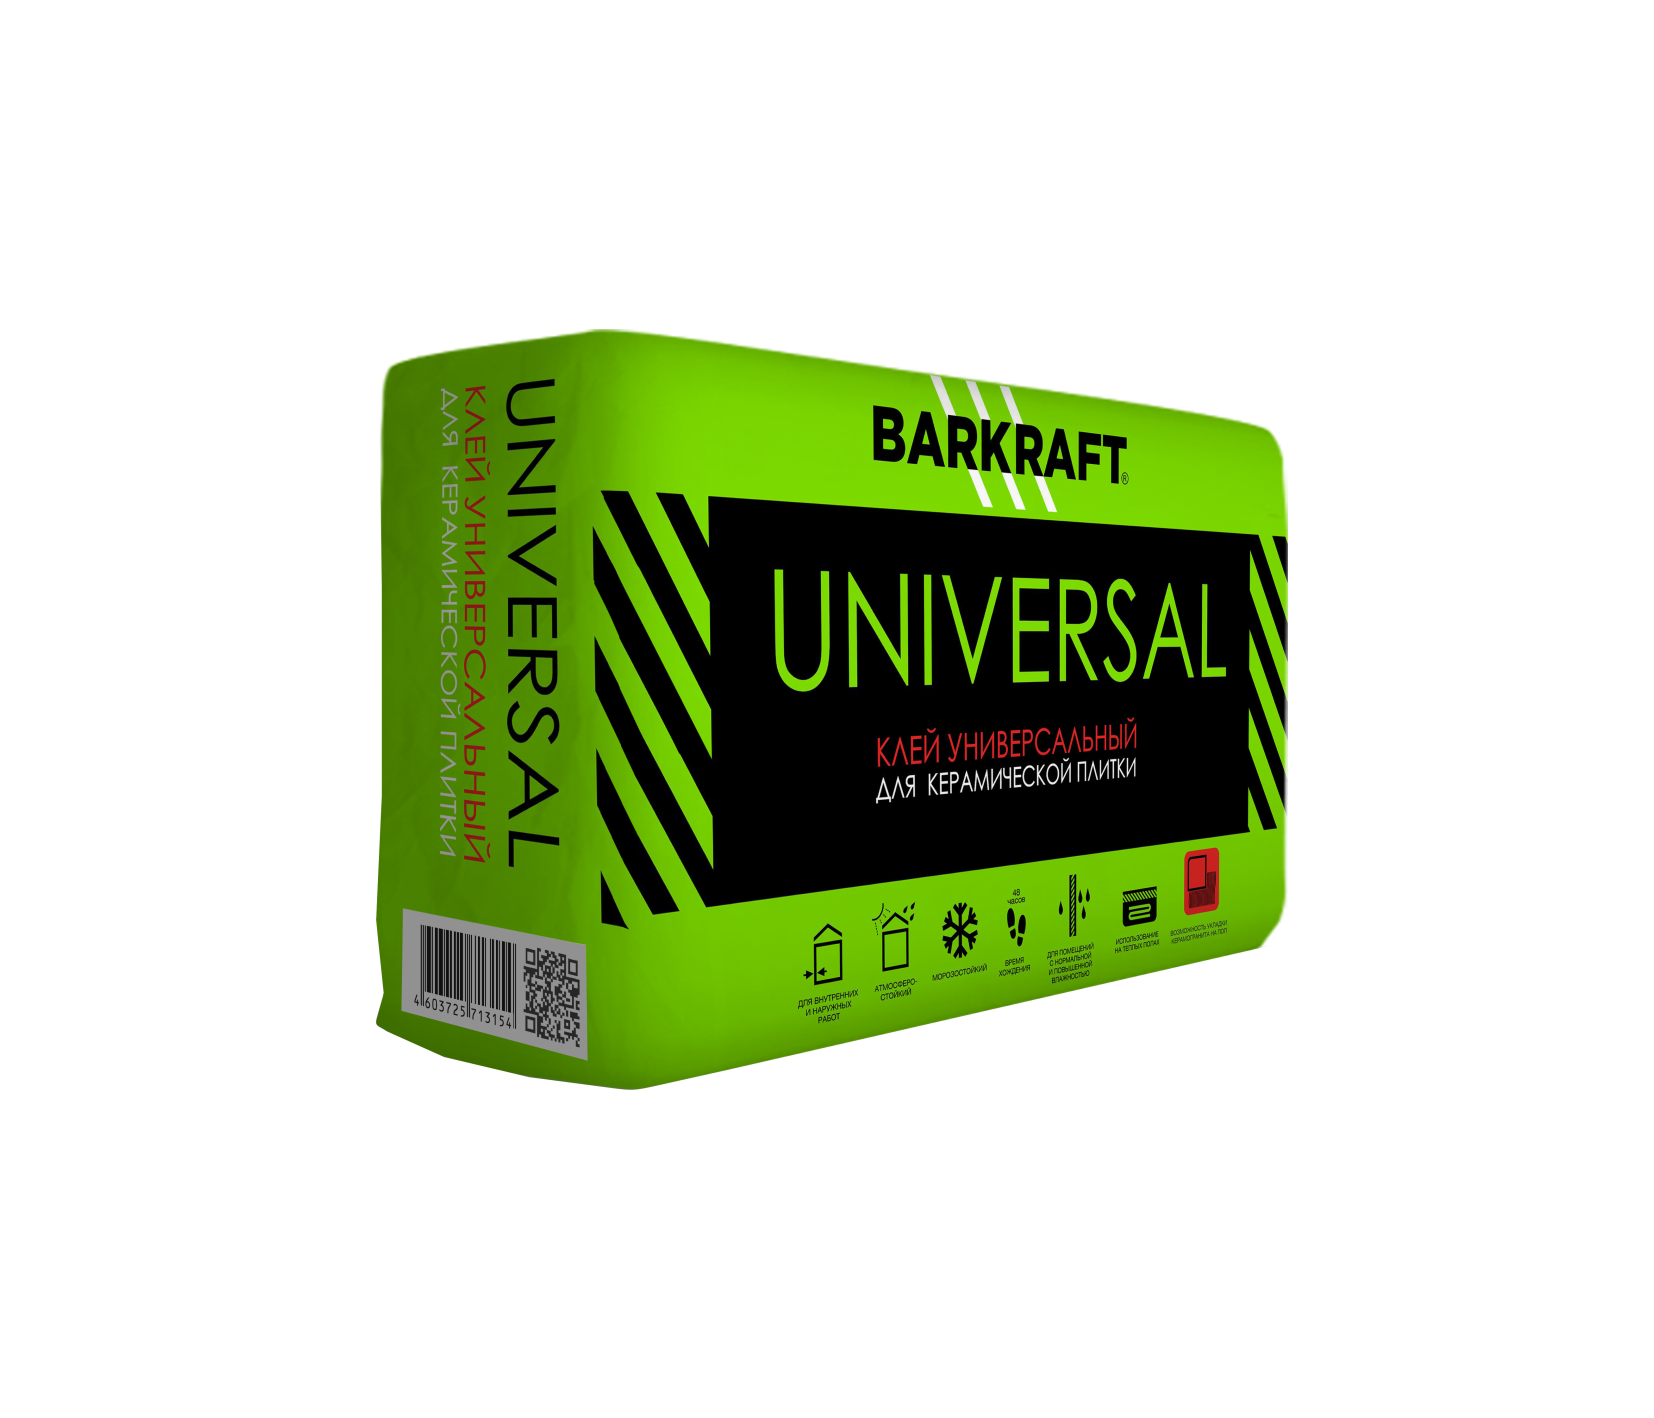 Плиточный клей UNIVERSAL BARKRAFT, 25 кг